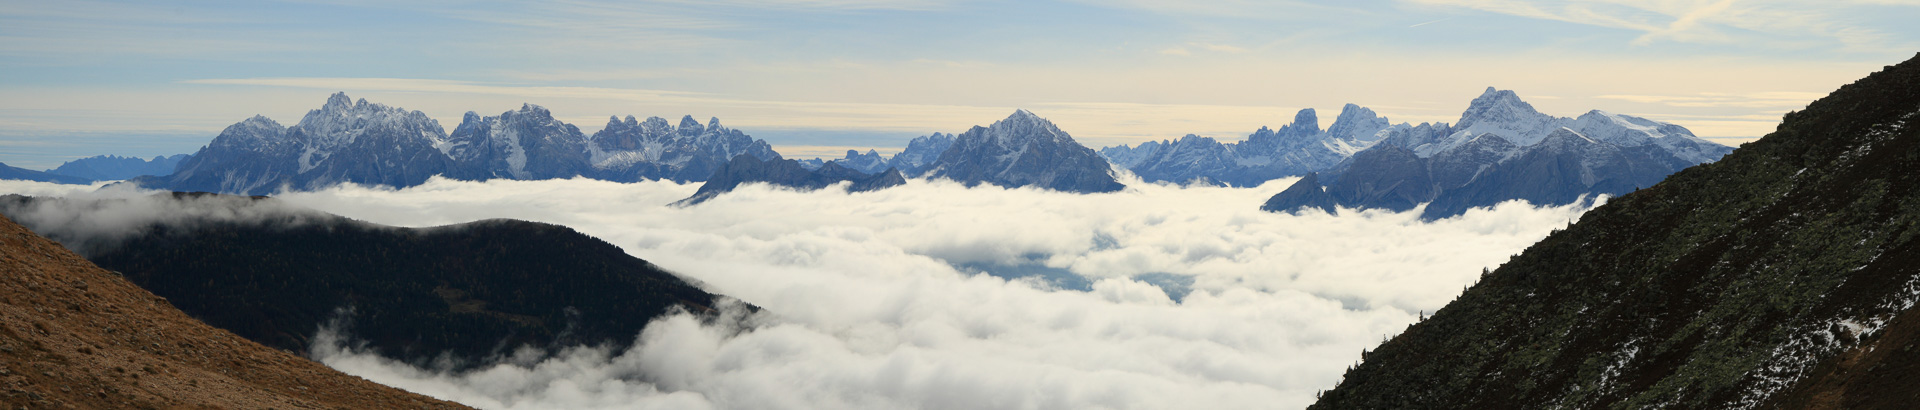 Über den Wolken erheben sich die Dolomiten.